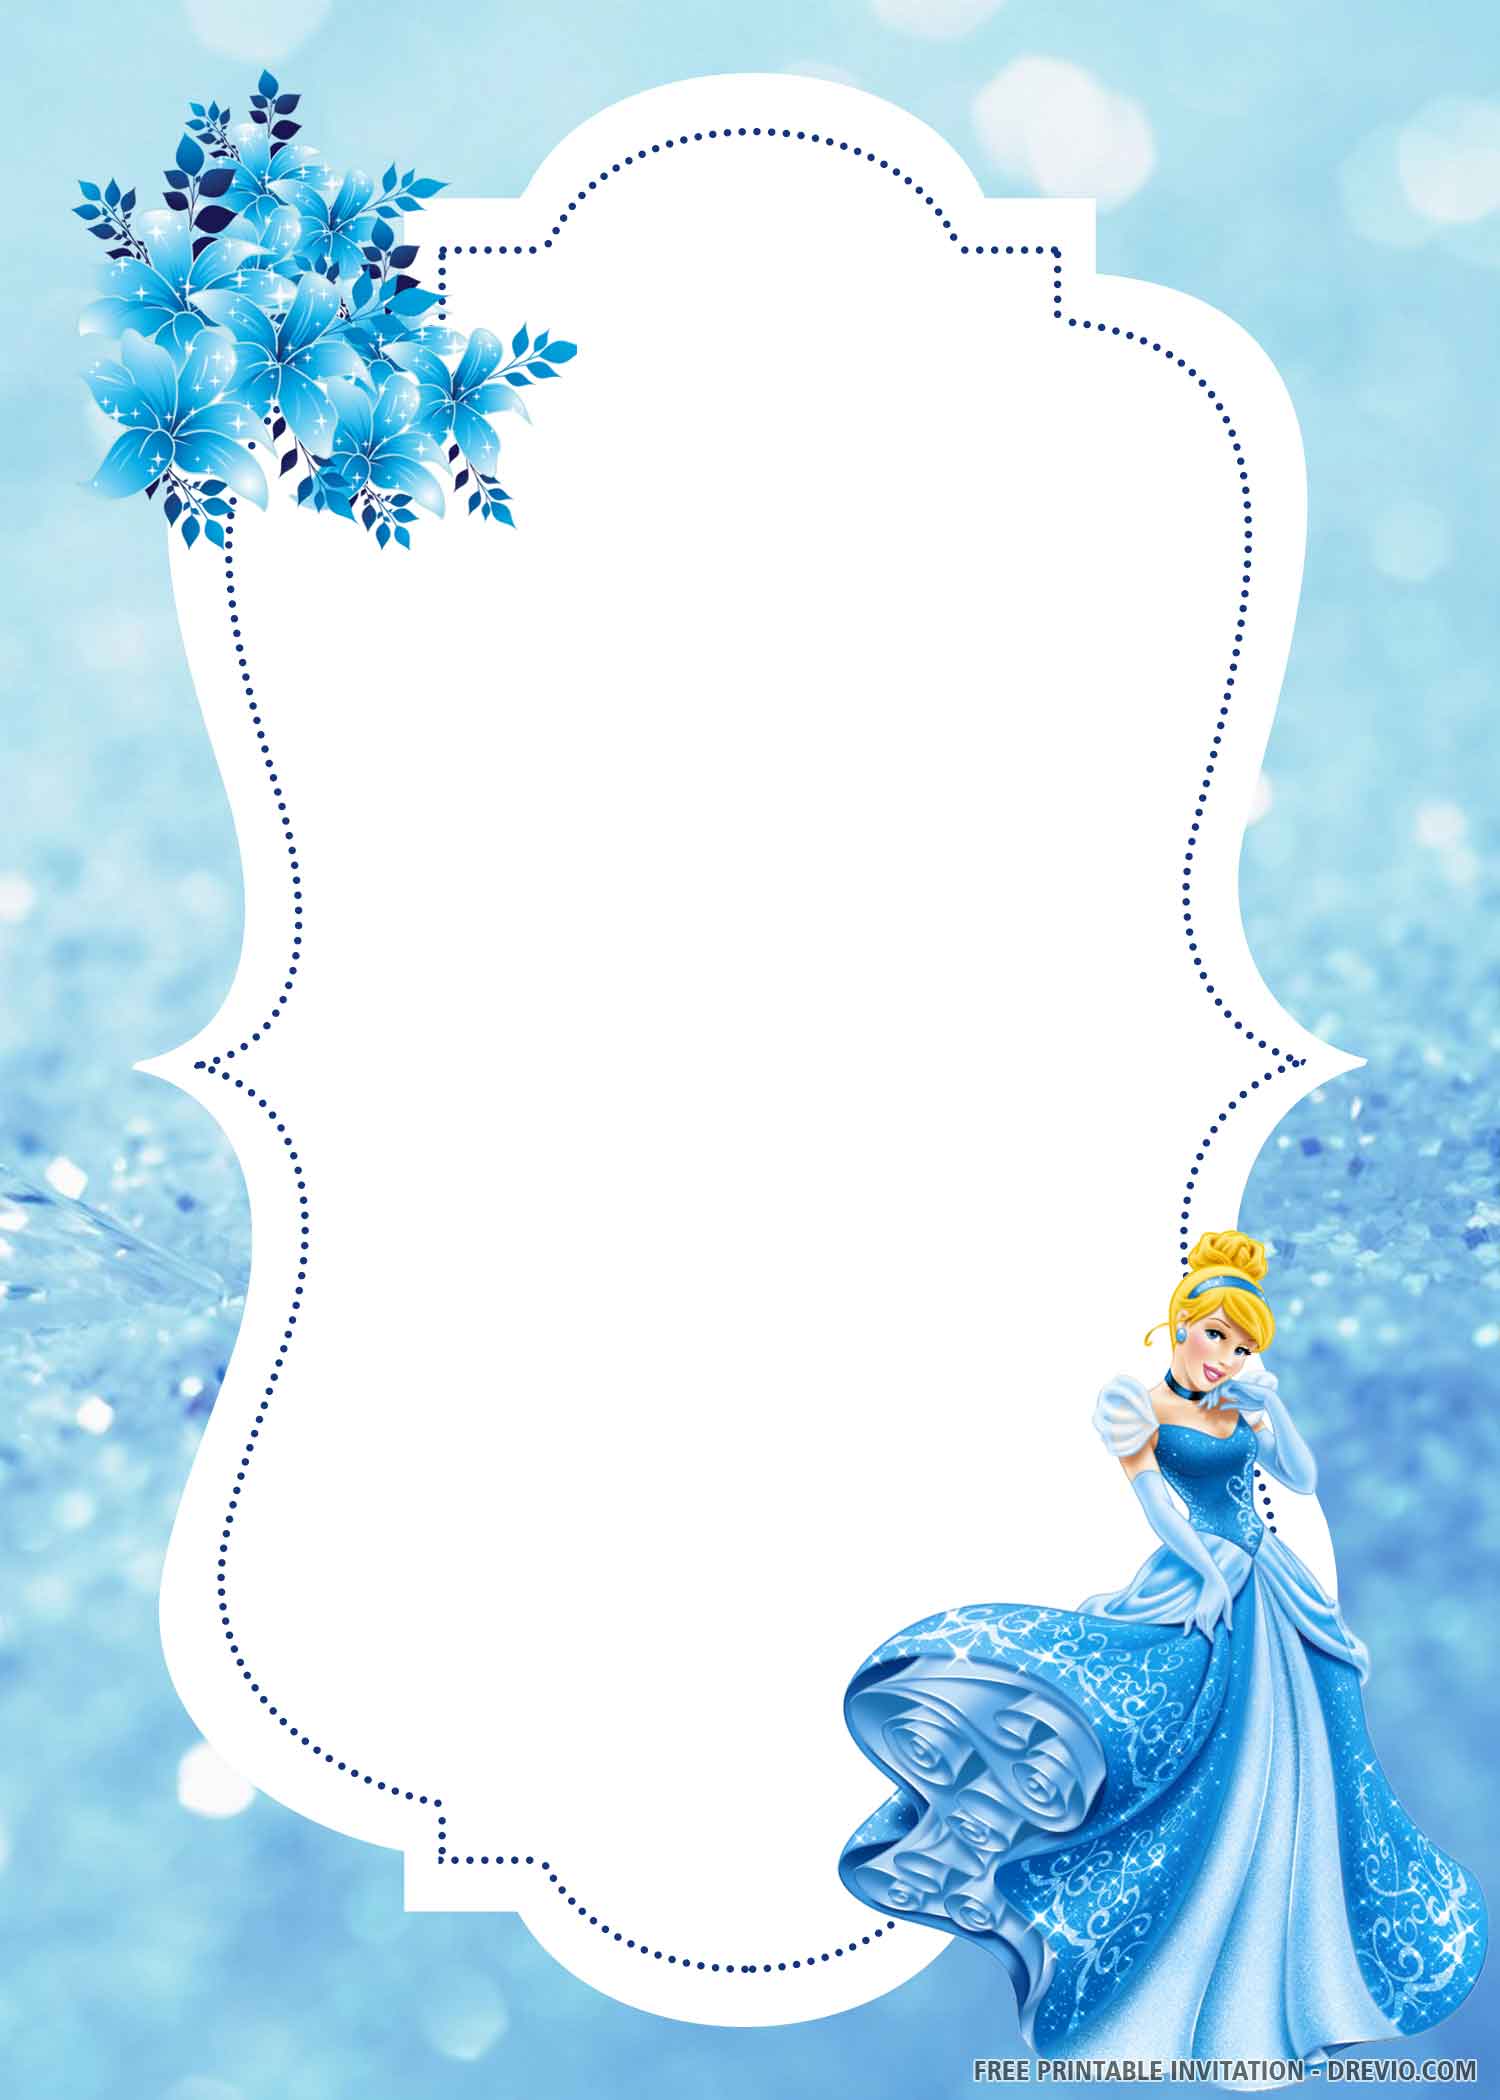 cinderella-invitation-blue-floral-template-download-hundreds-free